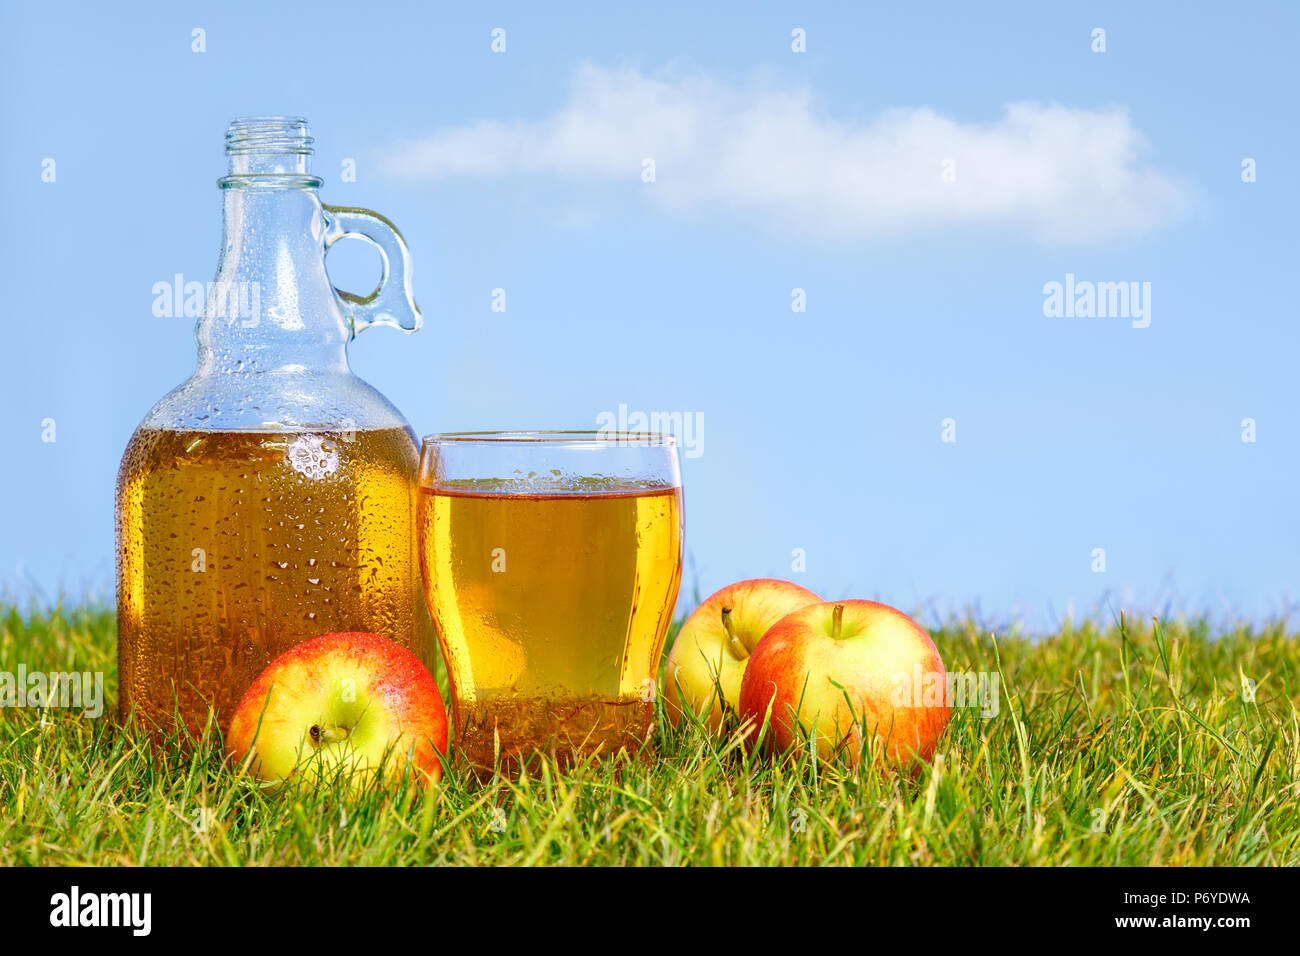 Ein eiskaltes Krug frischen Apfelwein mit pint Glas unter grünen Gras in einem Obstgarten an einem heißen Sommertag. Stockfoto